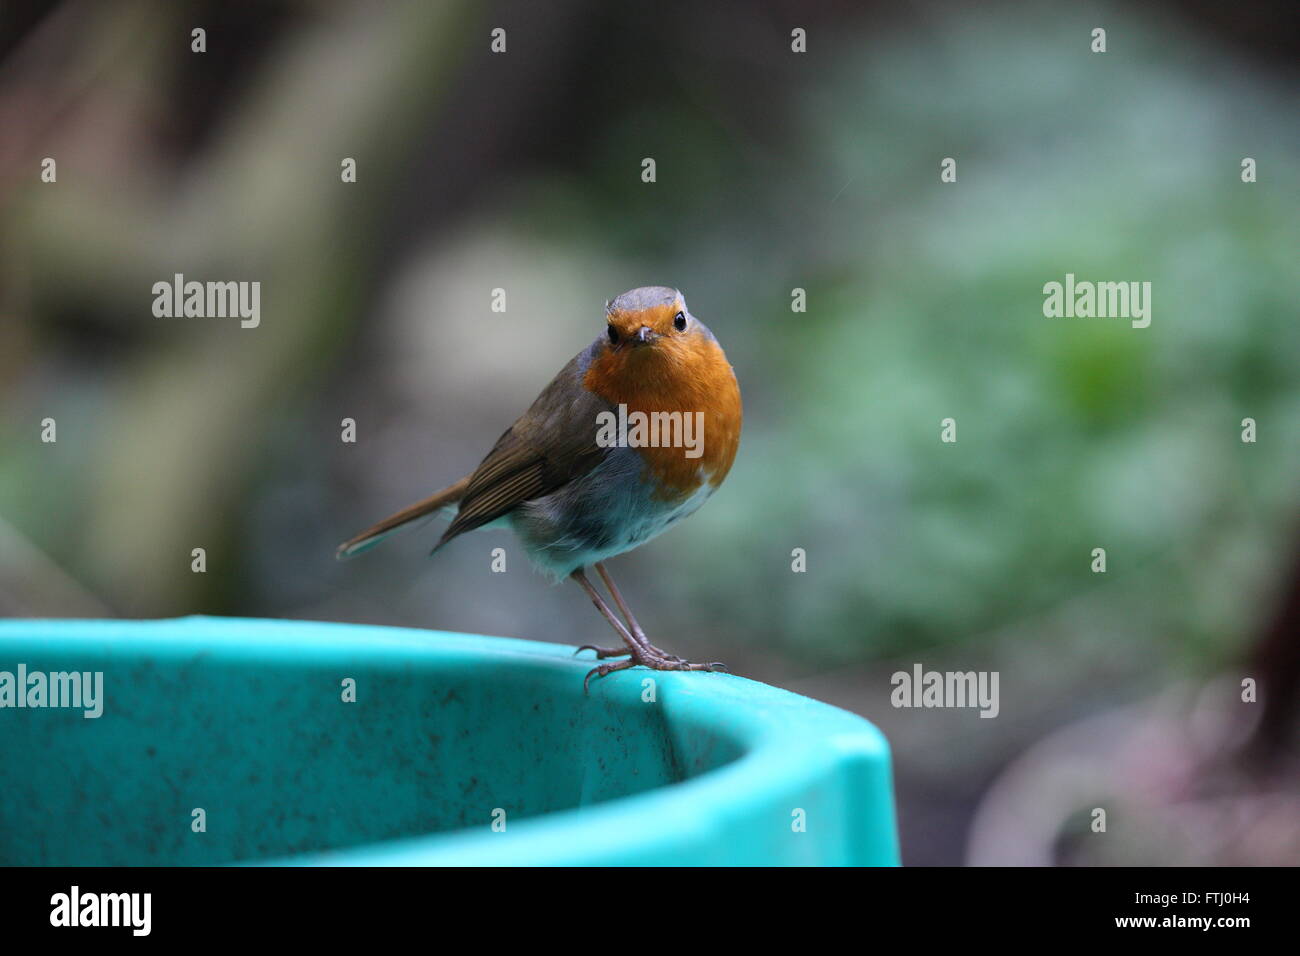 Robin,Erithacus rubecula,giardino selvaggio bird,seduto su una vasca di verde guardando la telecamera Foto Stock